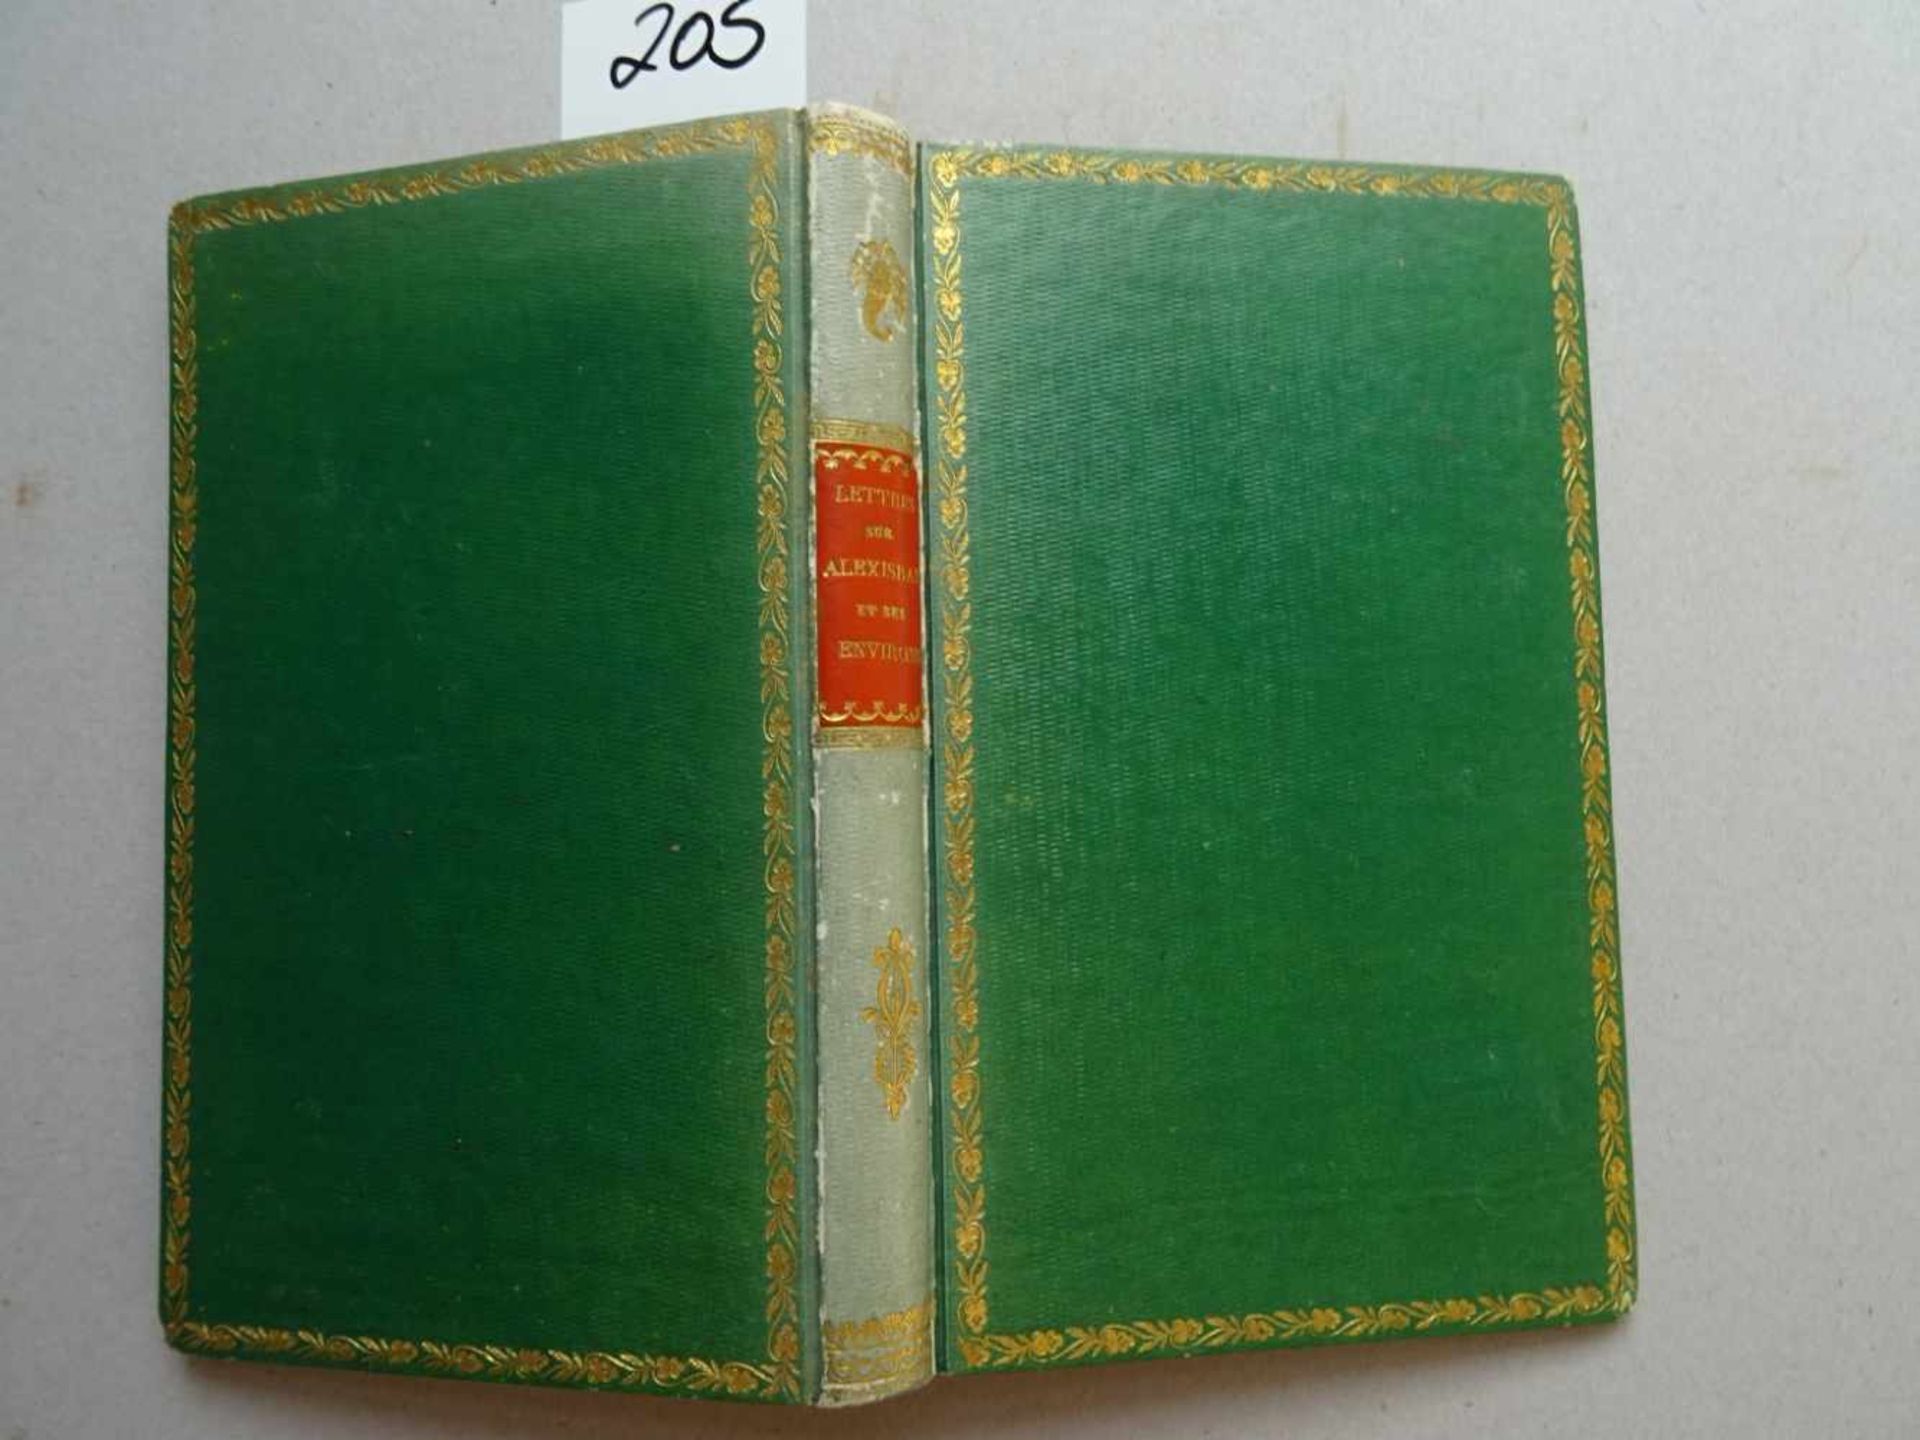 (Freygand, W.v.).Lettres sur Alexisbad et ses environs. Leipzig, 1830. Titel, 195 S. Gr.-8°. - Bild 3 aus 3